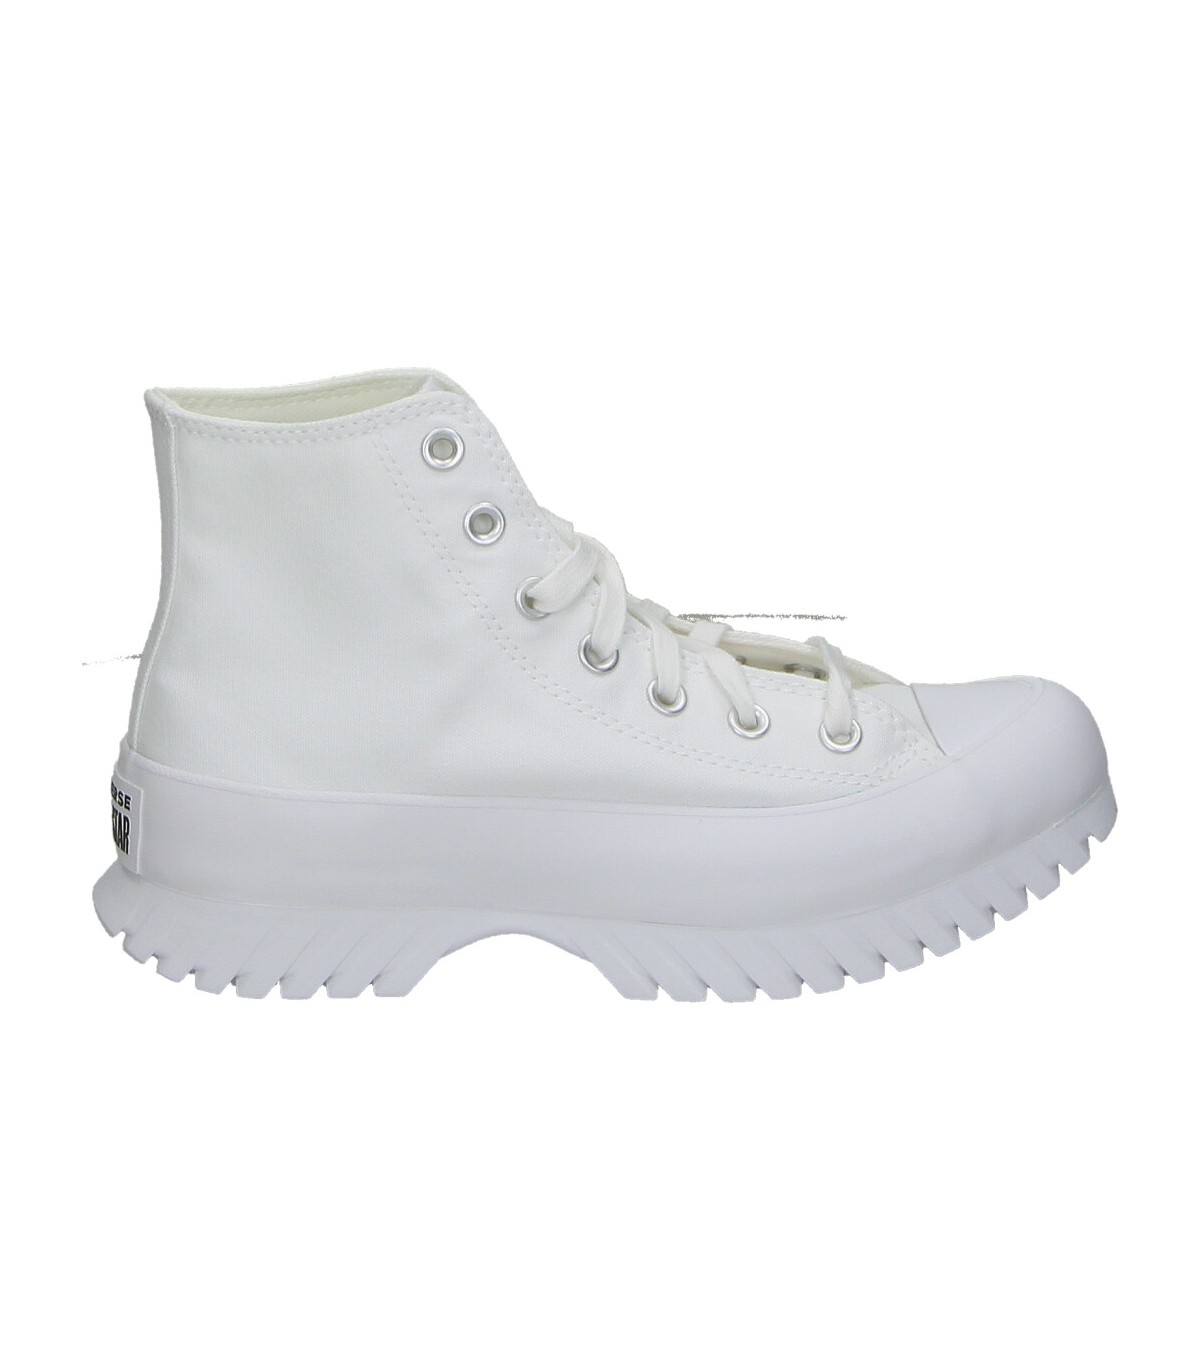 Zapatillas blancas altas Converse Lugged 2.0 online en